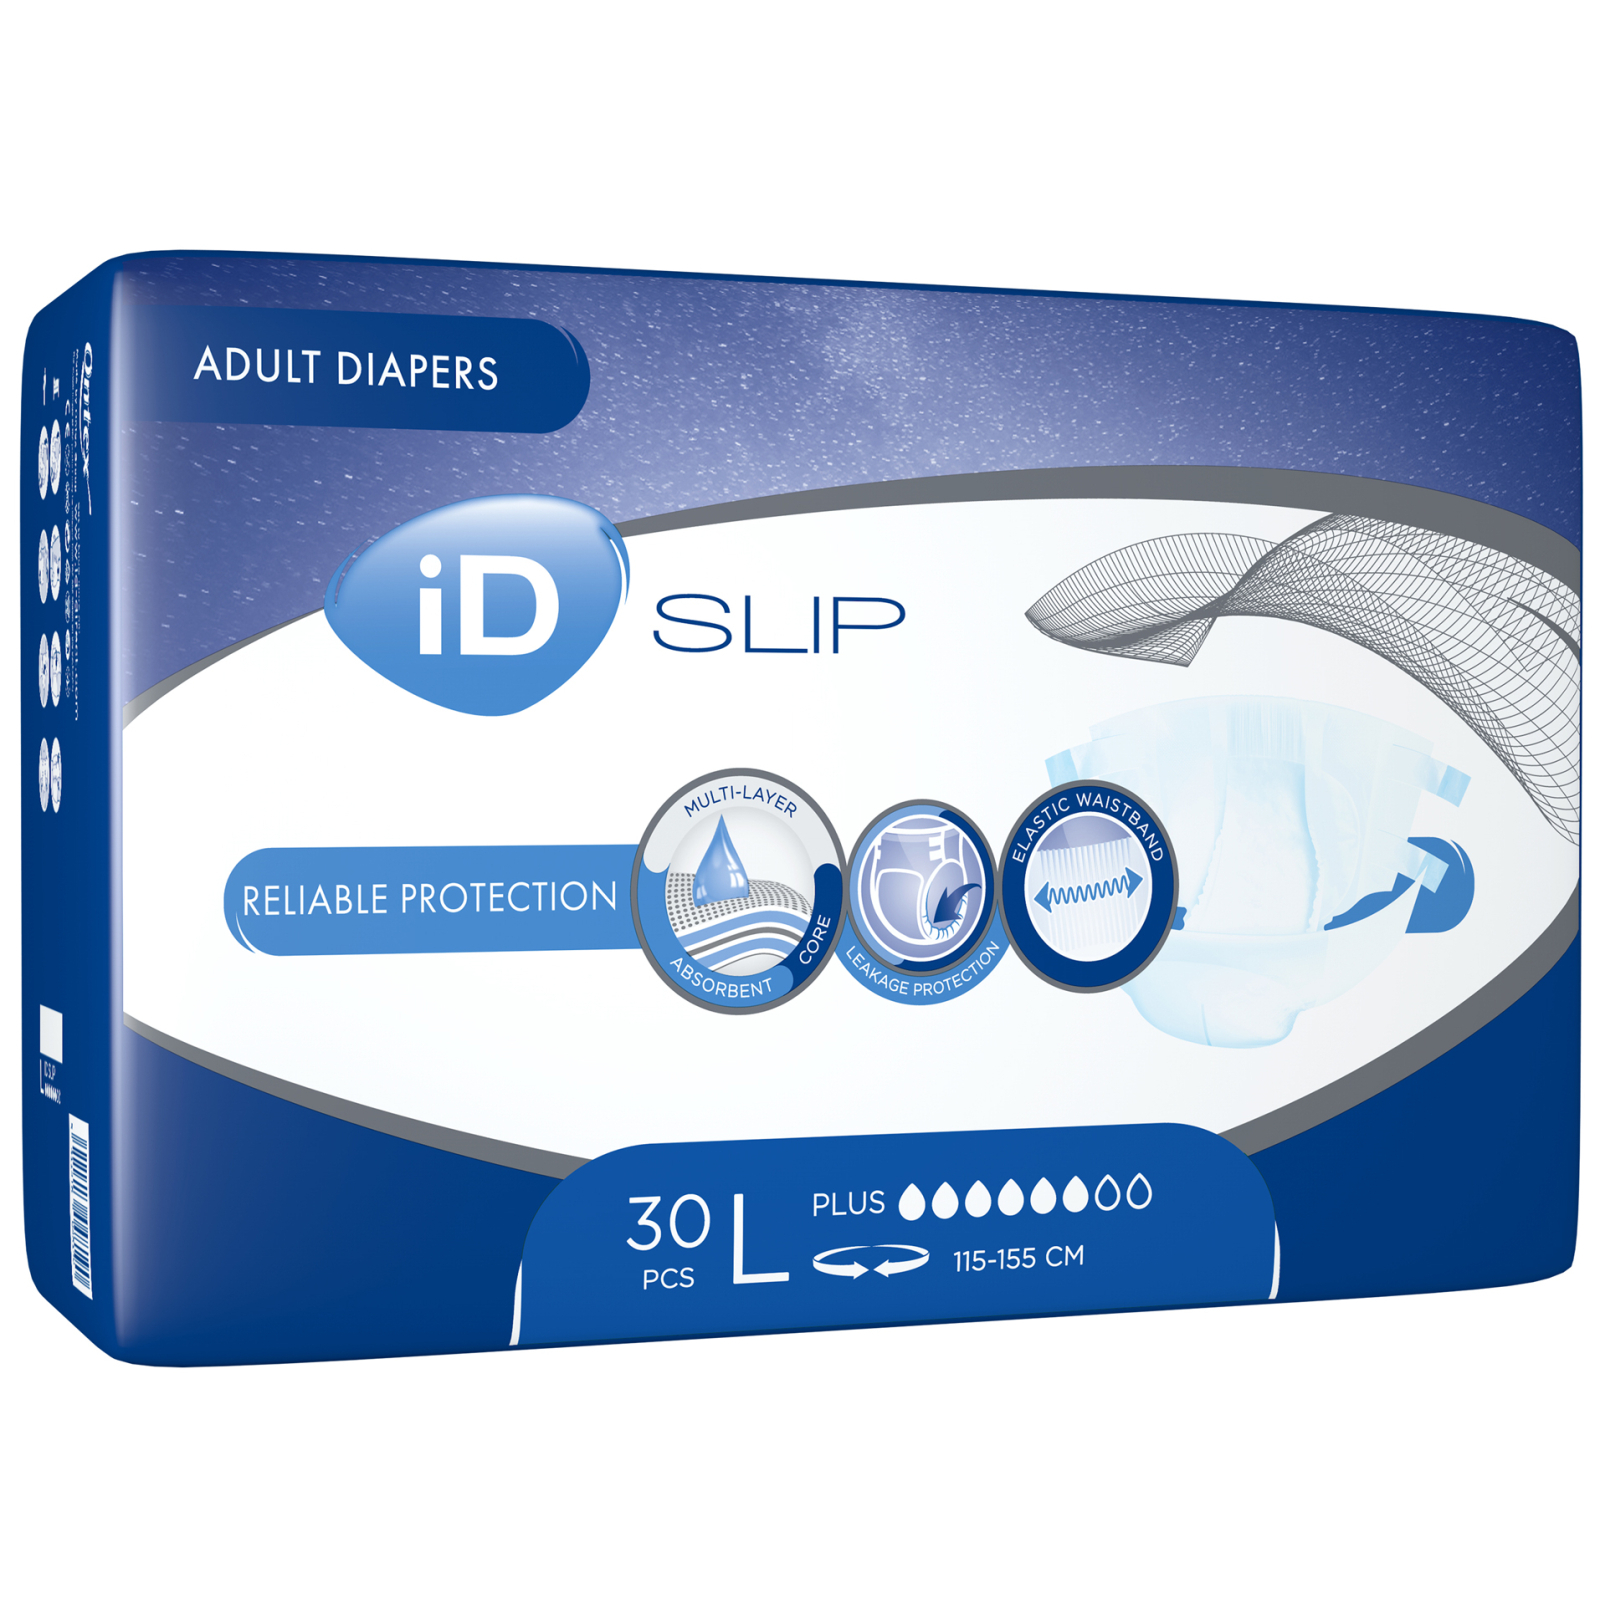 Подгузники для взрослых ID Slip Plus Large талия 115-155 см. 30 шт. (5411416048190) изображение 2